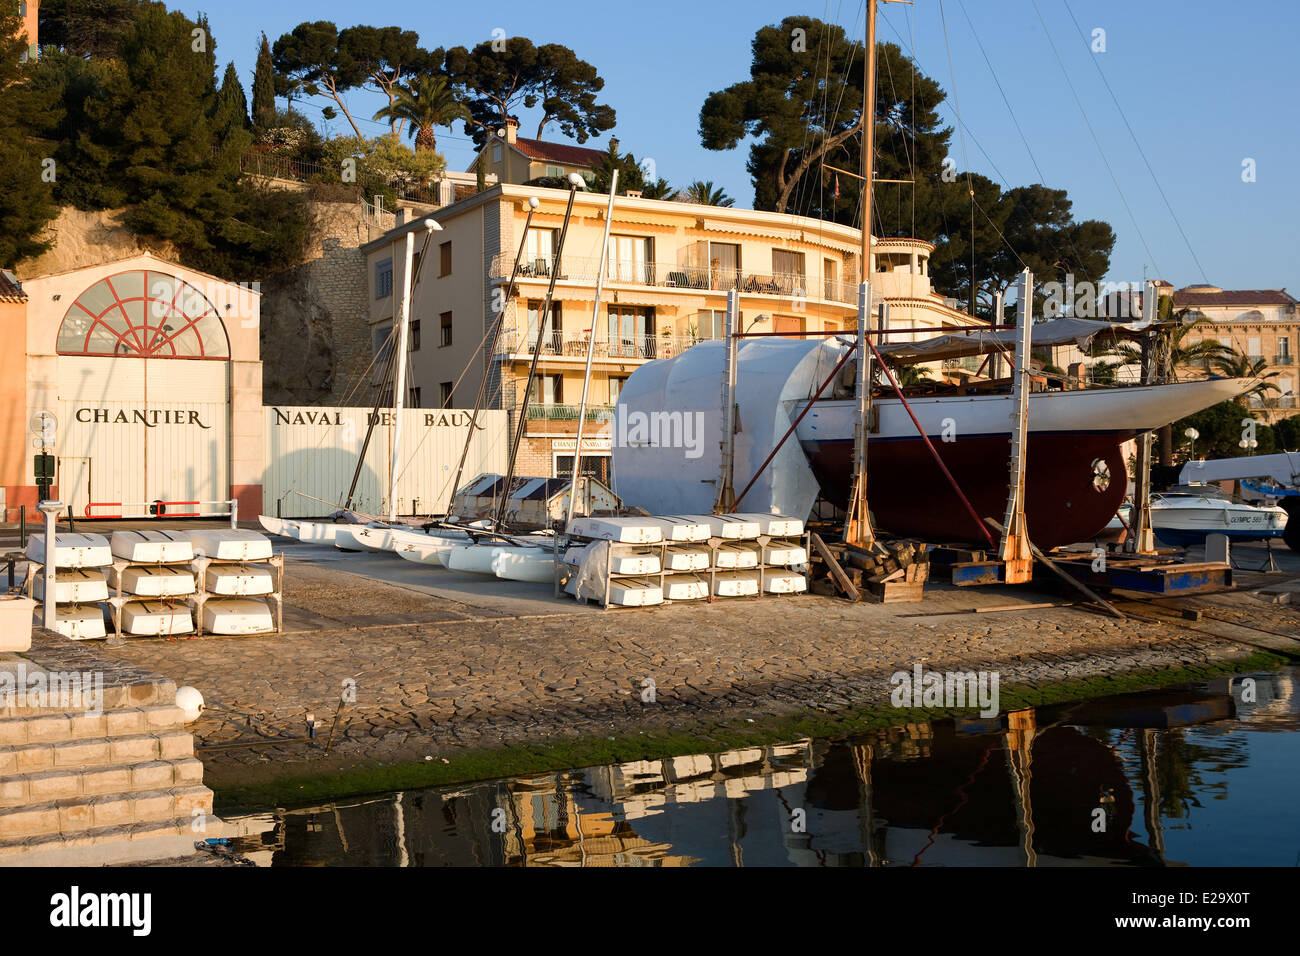 La France, Var, Sanary sur Mer, chantier naval des Baux Banque D'Images